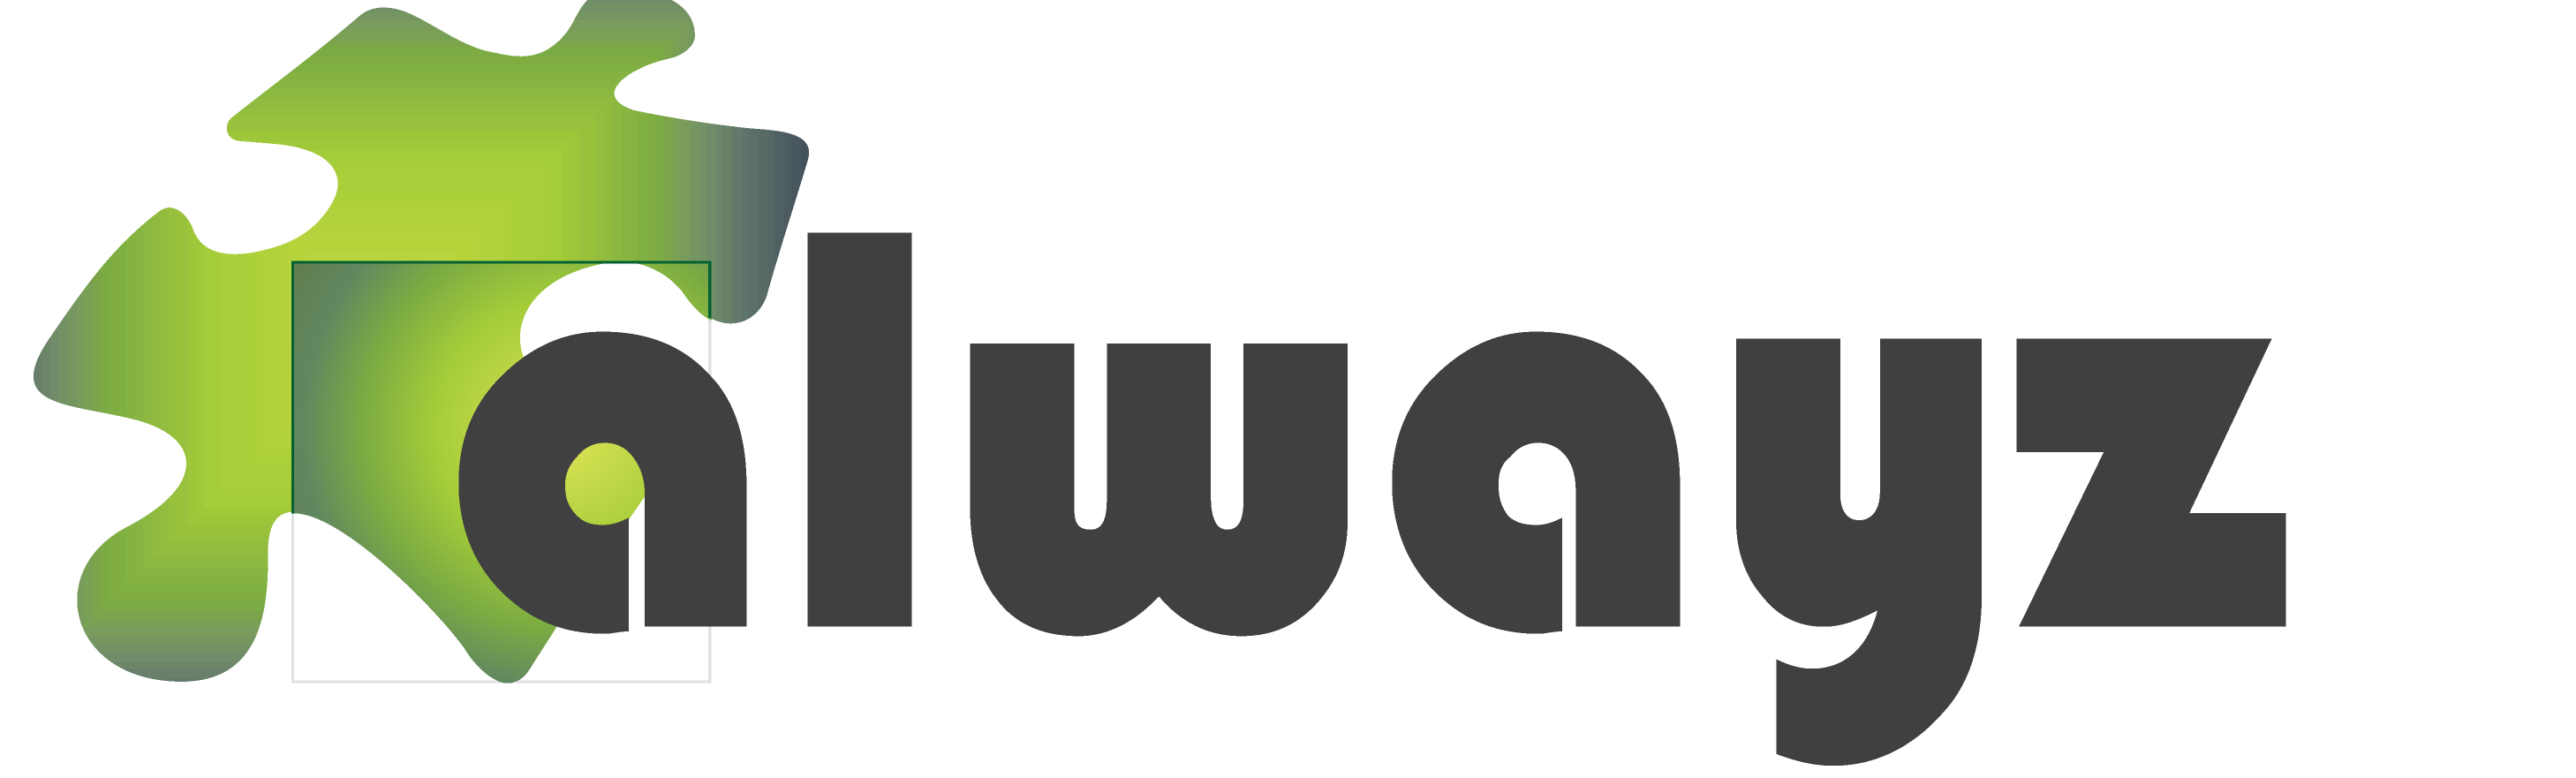 alwayz logo